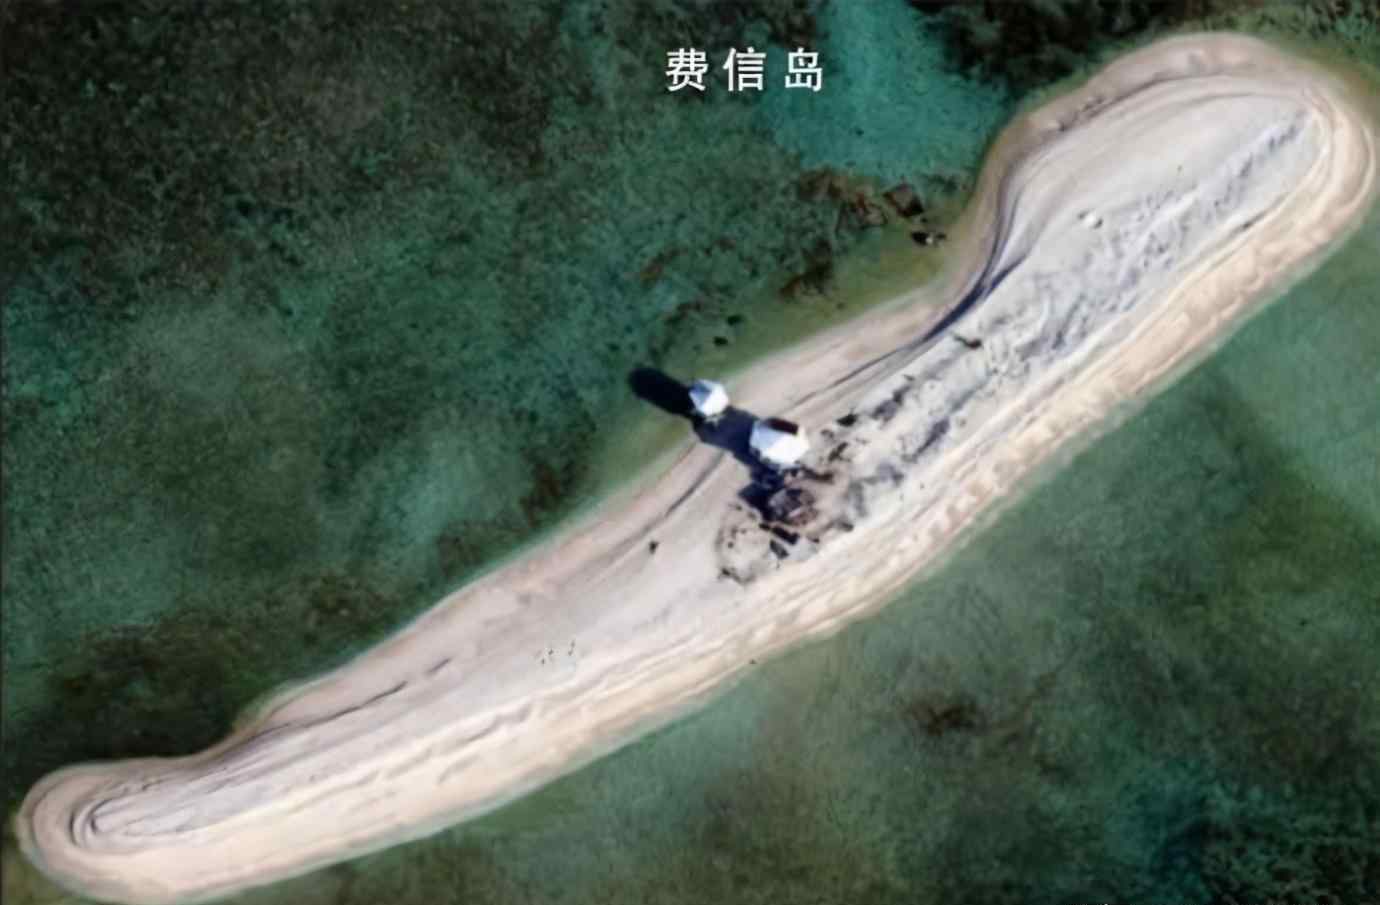 中国实控南海岛礁36个 中国实际控制南海多少岛礁？这个数字很有参考价值